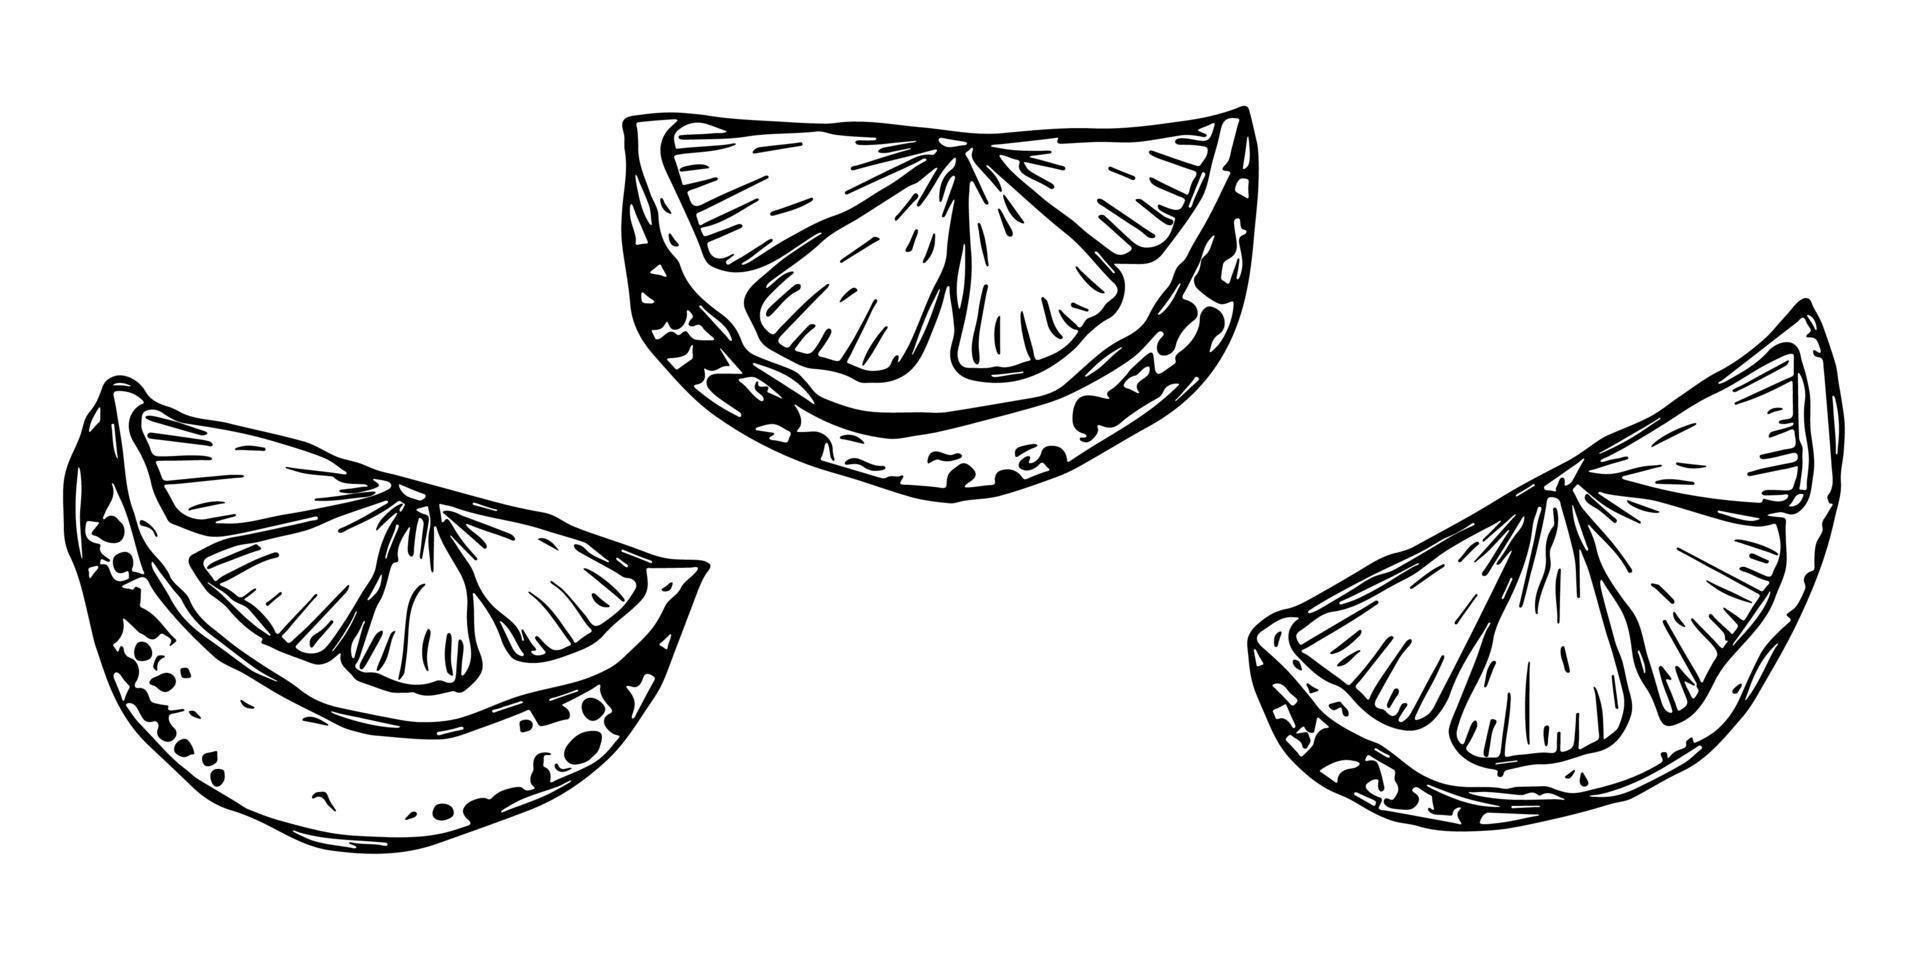 vector clipart de limão. conjunto de citrinos desenhados à mão. ilustração de frutas. para impressão, web, design, decoração